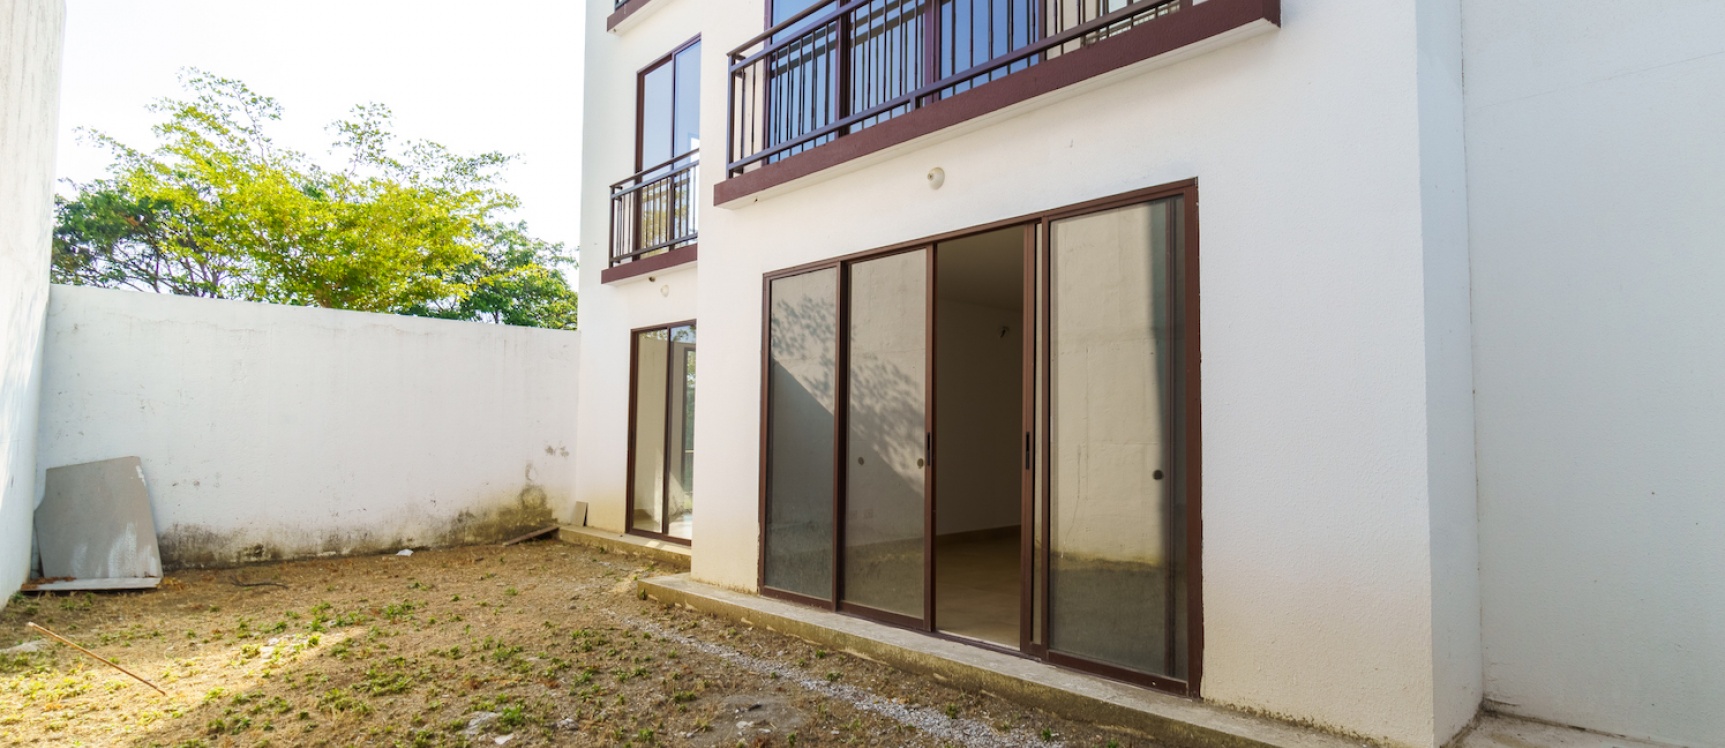 GeoBienes - Departamento planta baja con patio en venta, Urbanización Villas del Bosque - Plusvalia Guayaquil Casas de venta y alquiler Inmobiliaria Ecuador